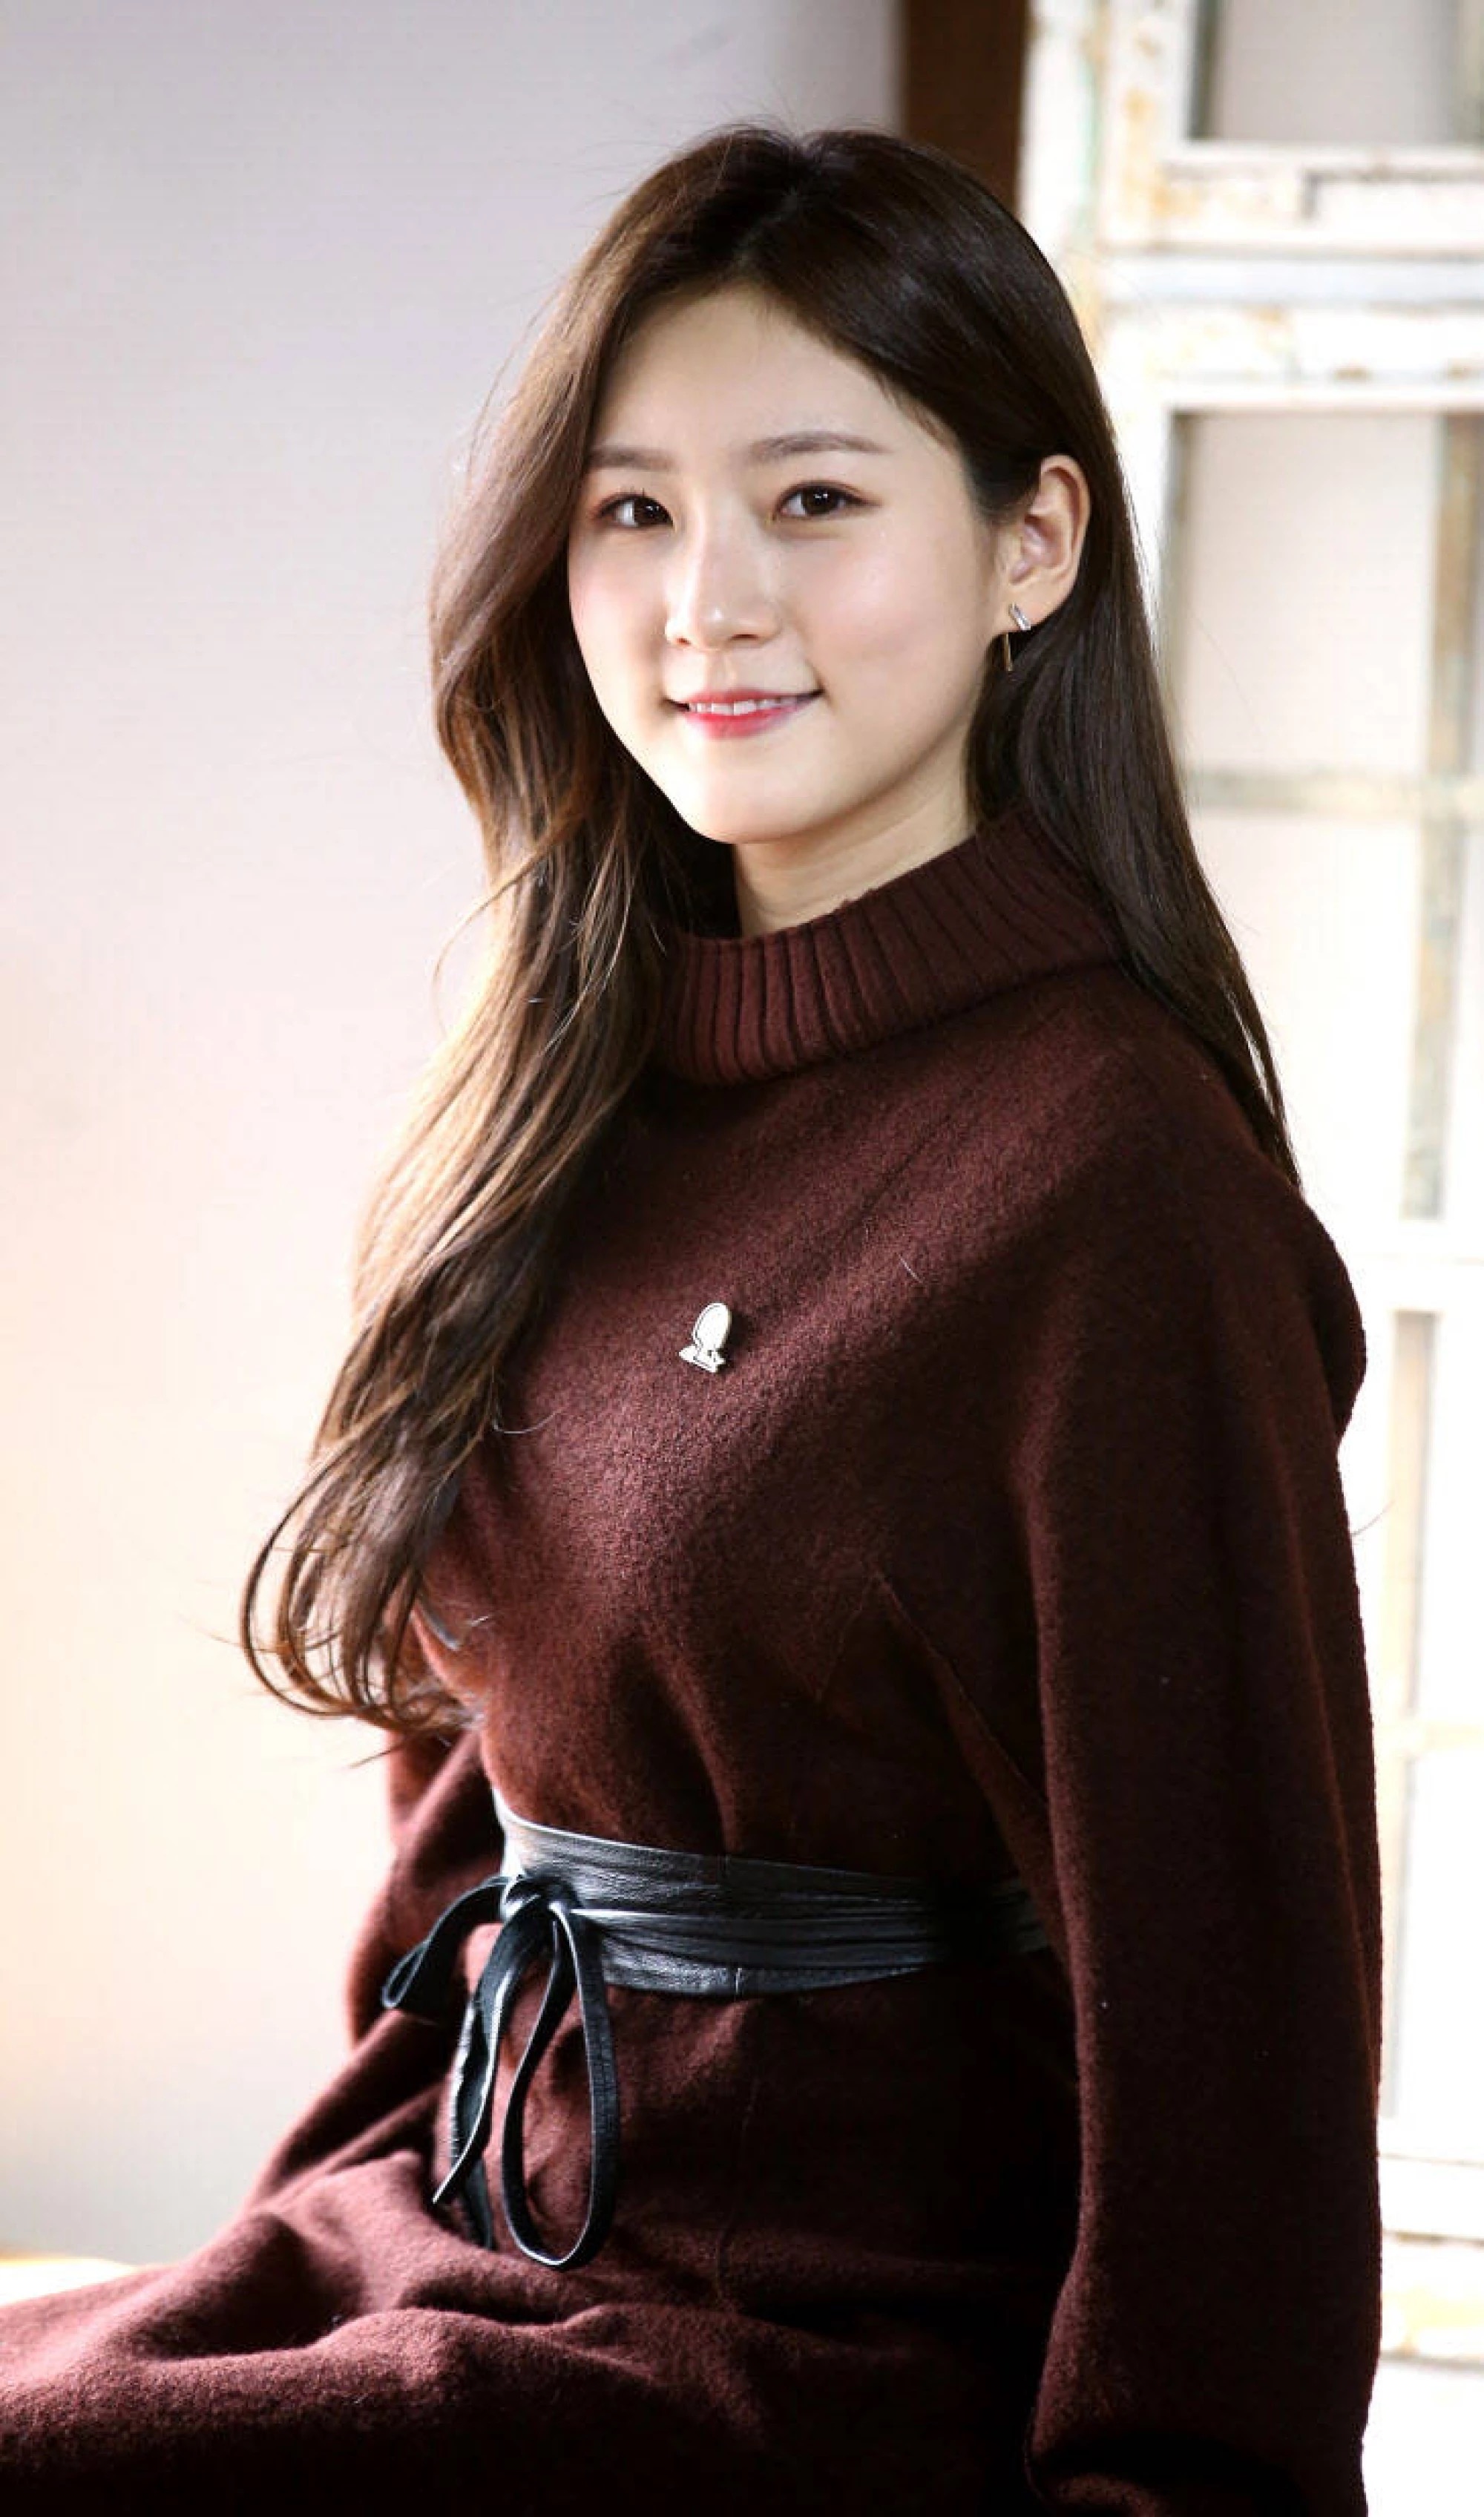 原创韩国最美童星金赛纶,都已19岁了这颜值却是多年没有变